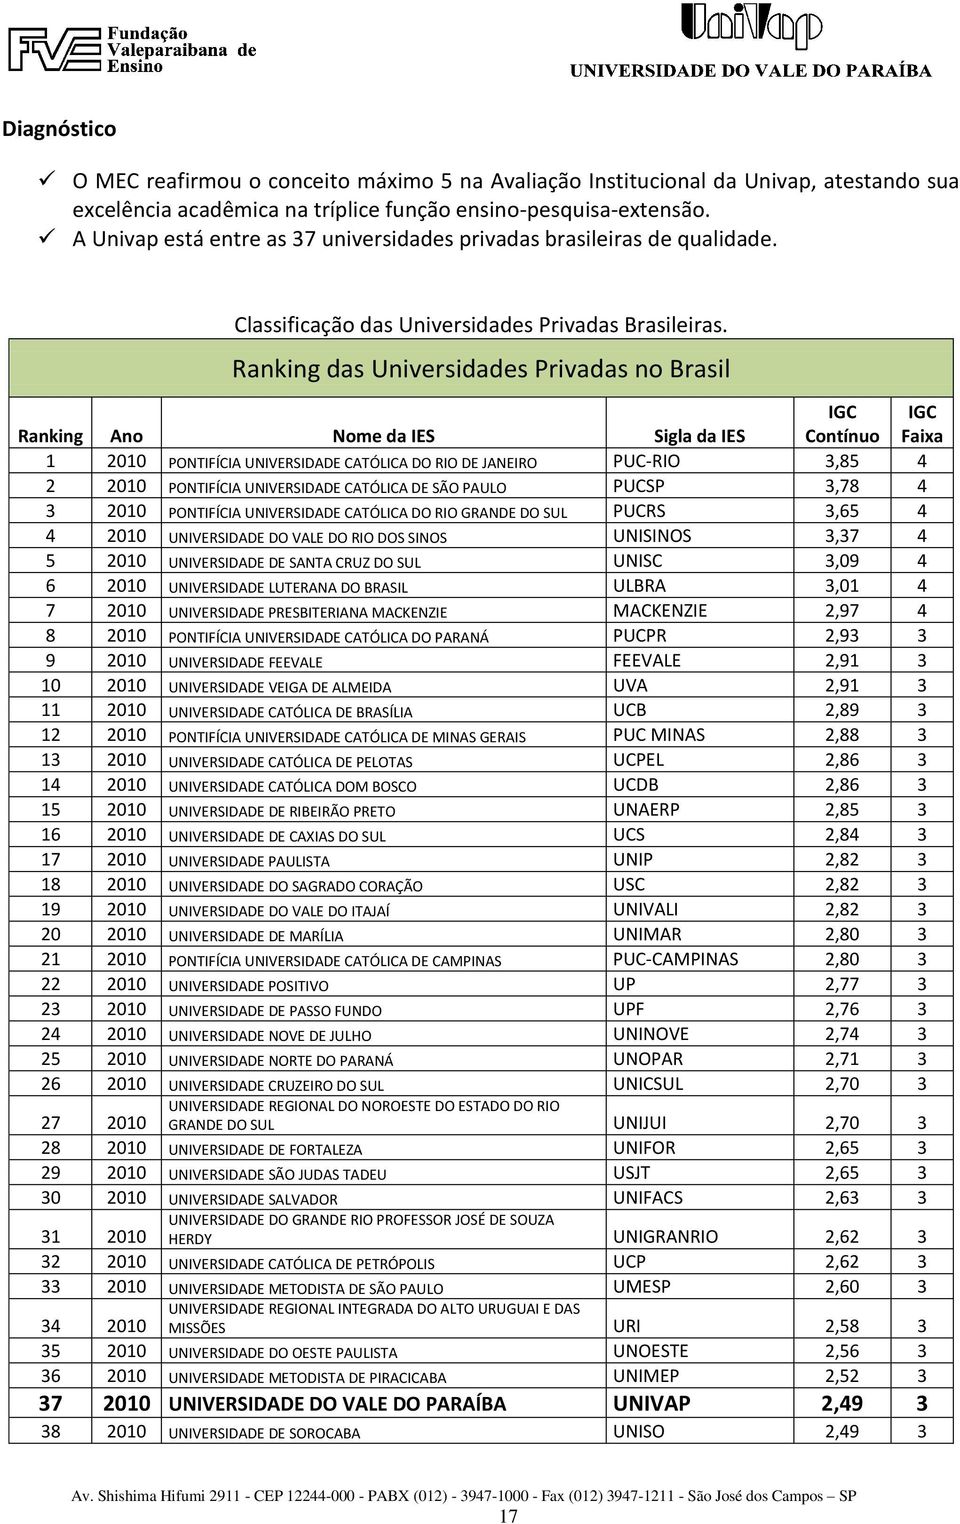 Ranking das Universidades Privadas no Brasil Ranking Ano Nome da IES Sigla da IES IGC Contínuo IGC Faixa 1 2010 PONTIFÍCIA UNIVERSIDADE CATÓLICA DO RIO DE JANEIRO PUC-RIO 3,85 4 2 2010 PONTIFÍCIA